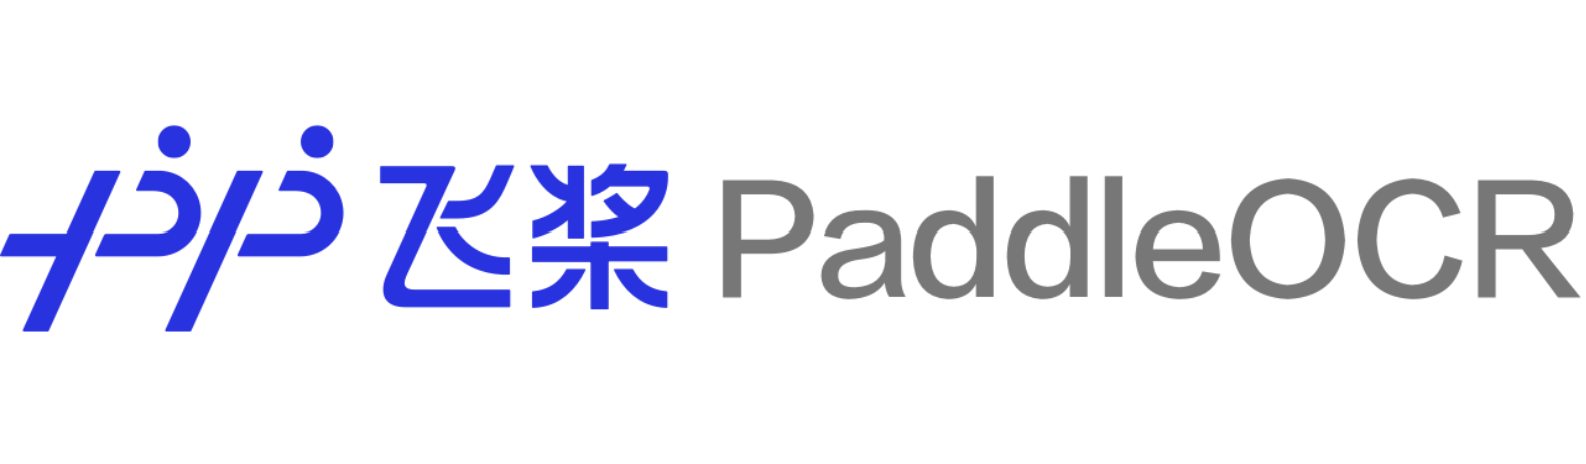 doc/PaddleOCR_log.png